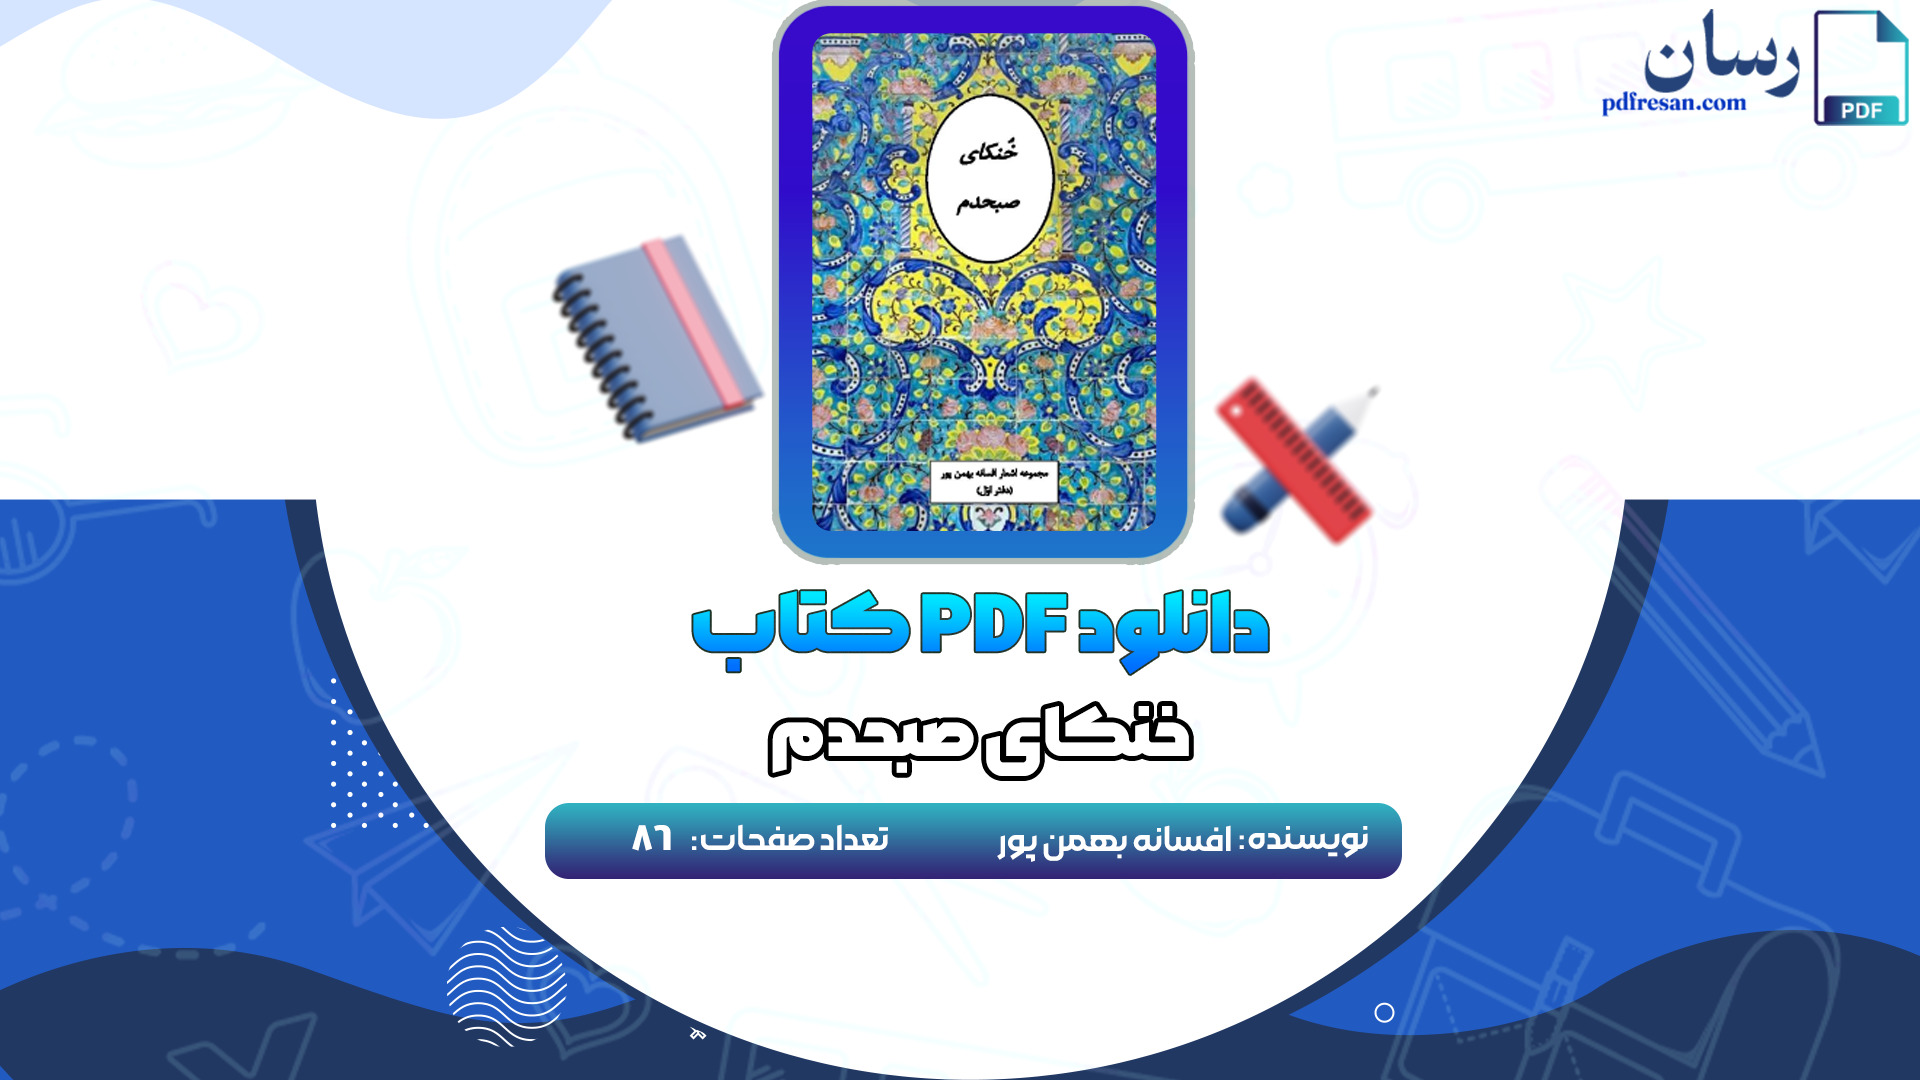 دانلود کتاب خنکای صبحدم افسانه بهمن پور PDF